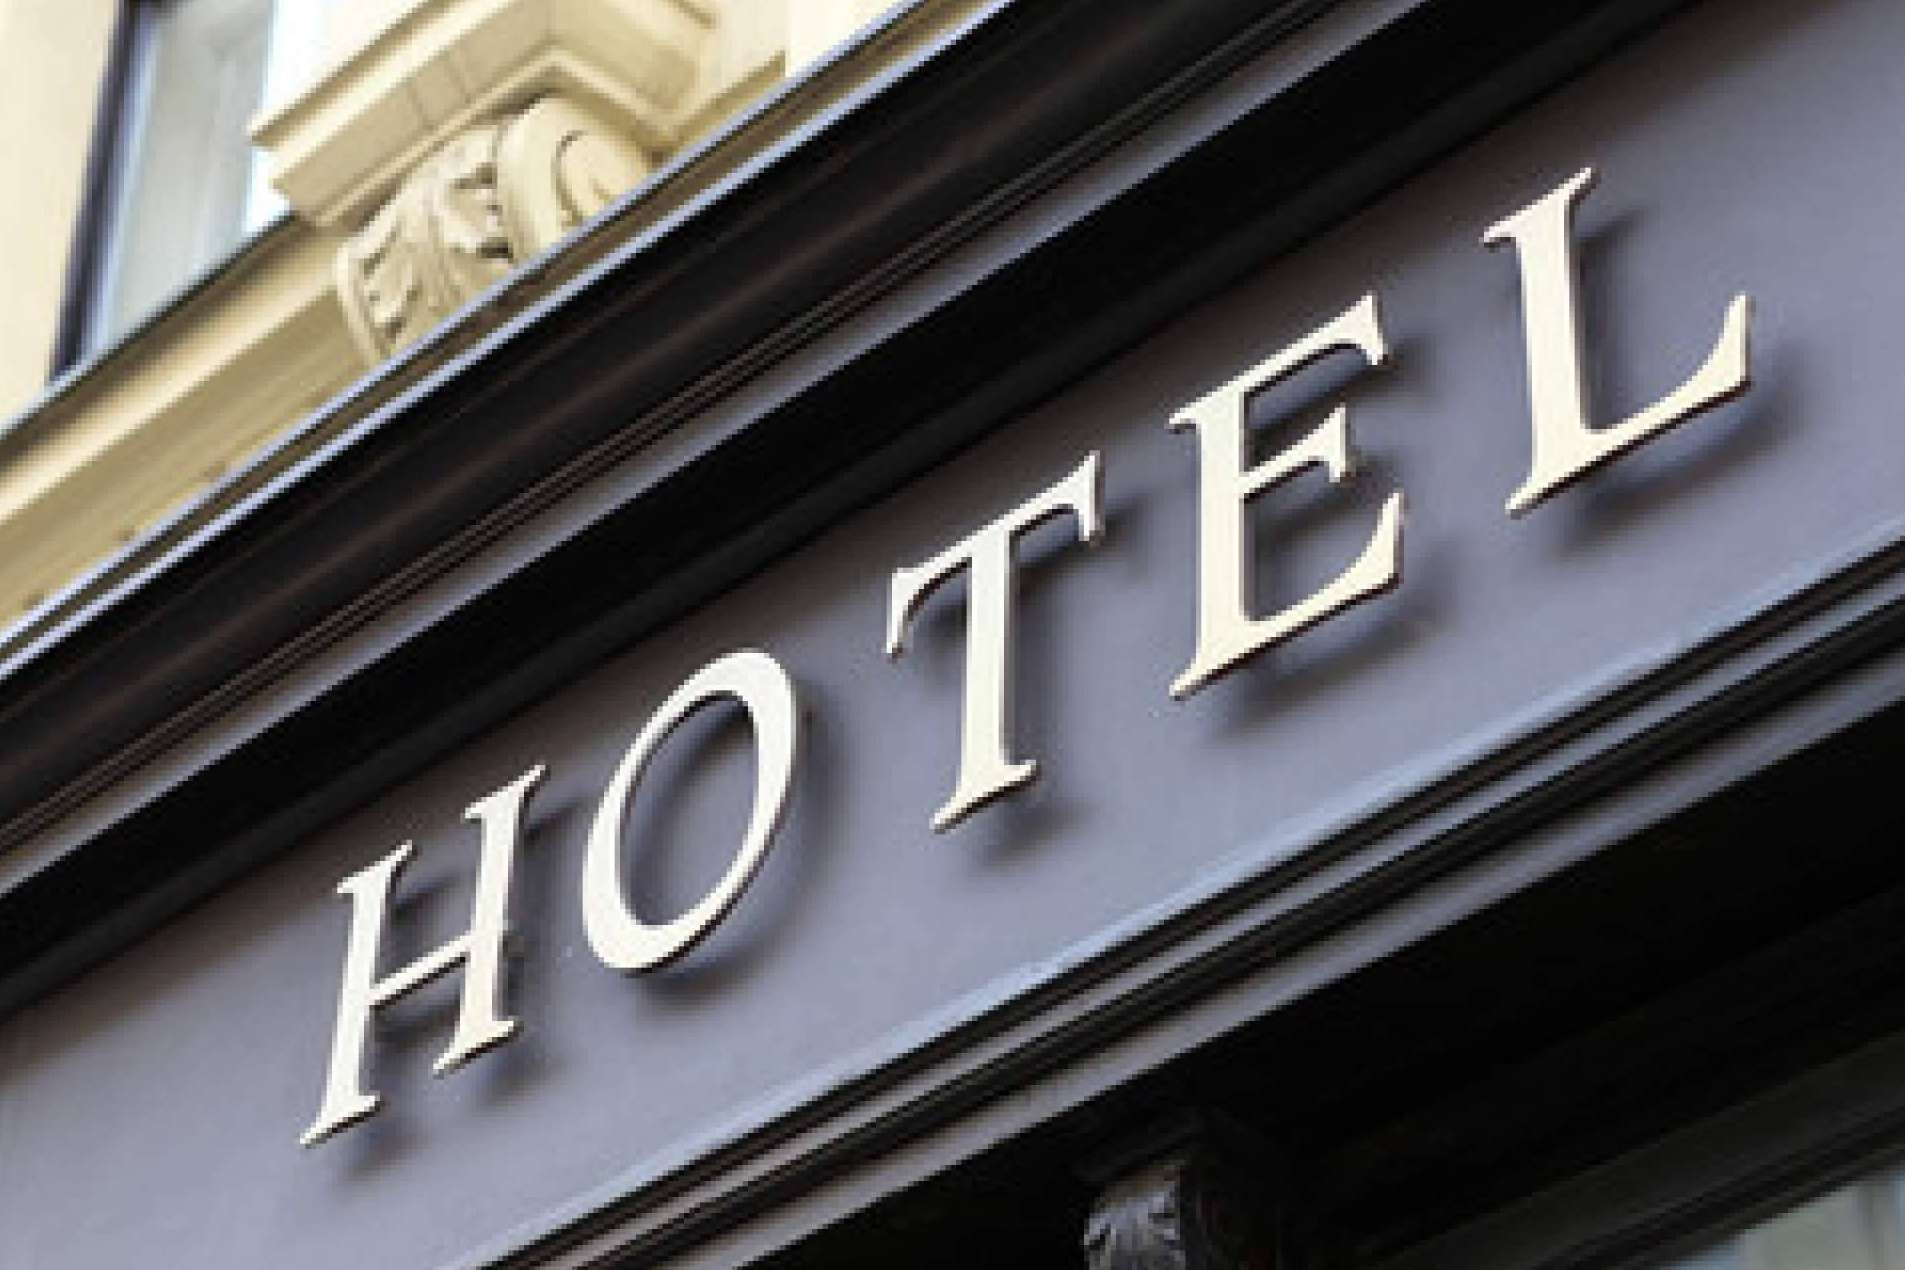  Sheel Real Estate ayuda a explorar oportunidades de inversión hotelera de élite 